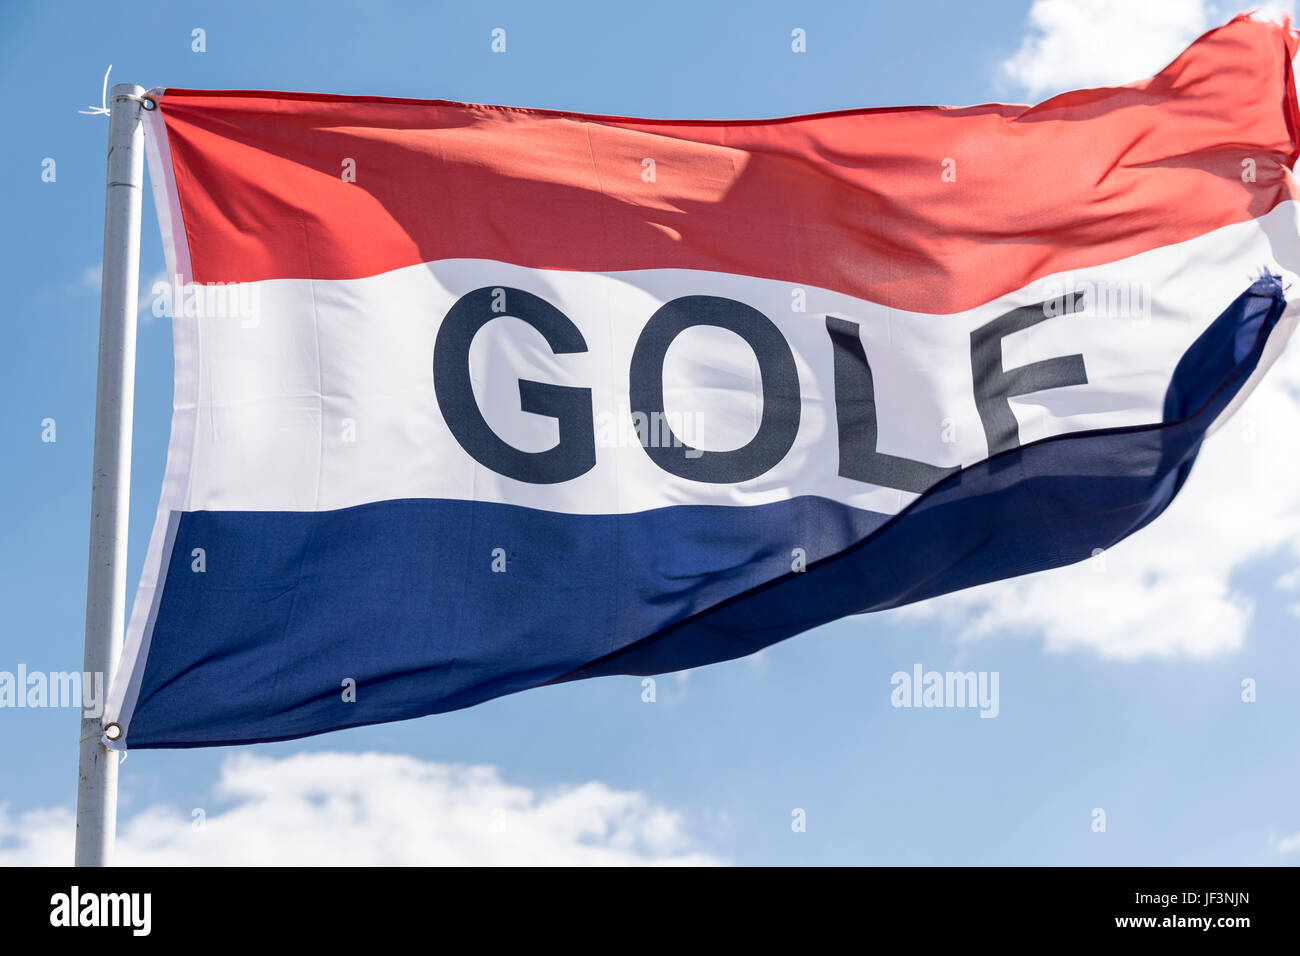 Niederlande Fahne mit Golf in den weißen Bereich gedruckt Stockfoto